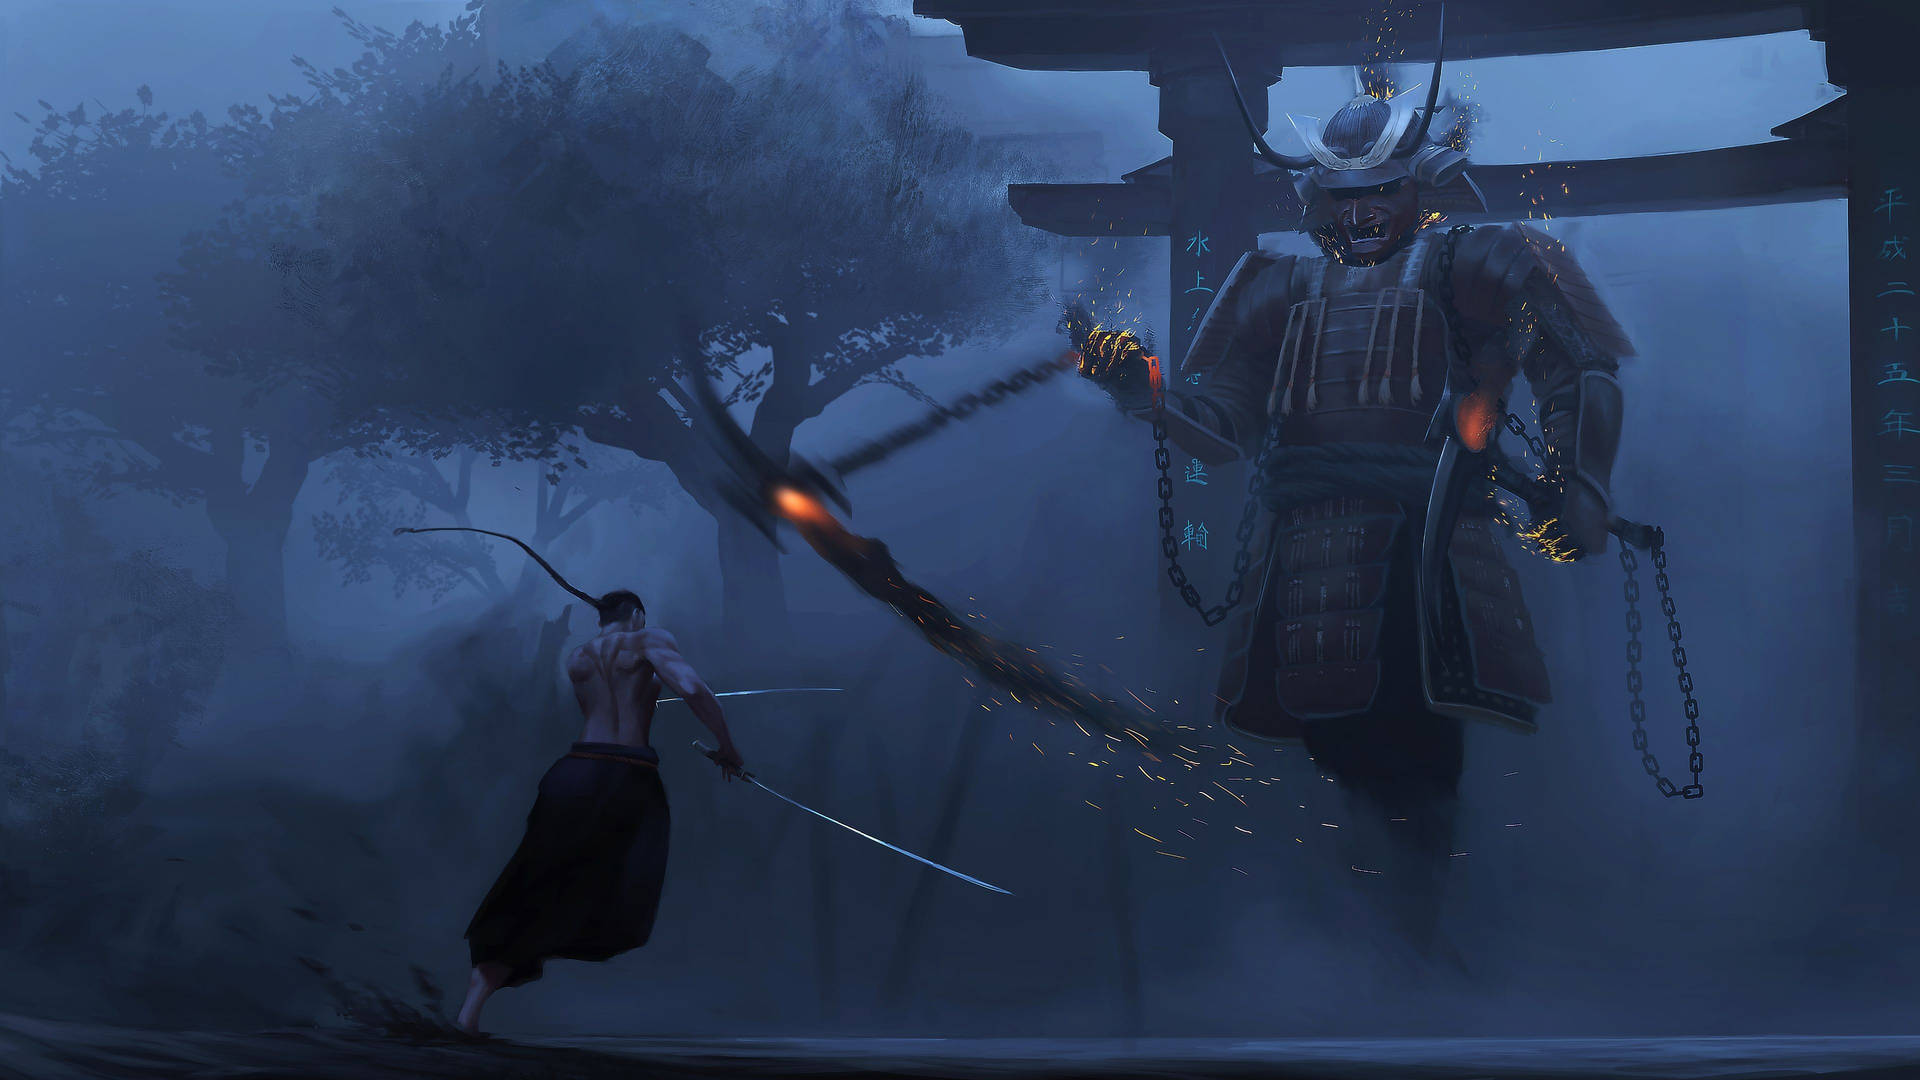 Samurai Warrior Standing in Tokyo in the Evening Wallpaper